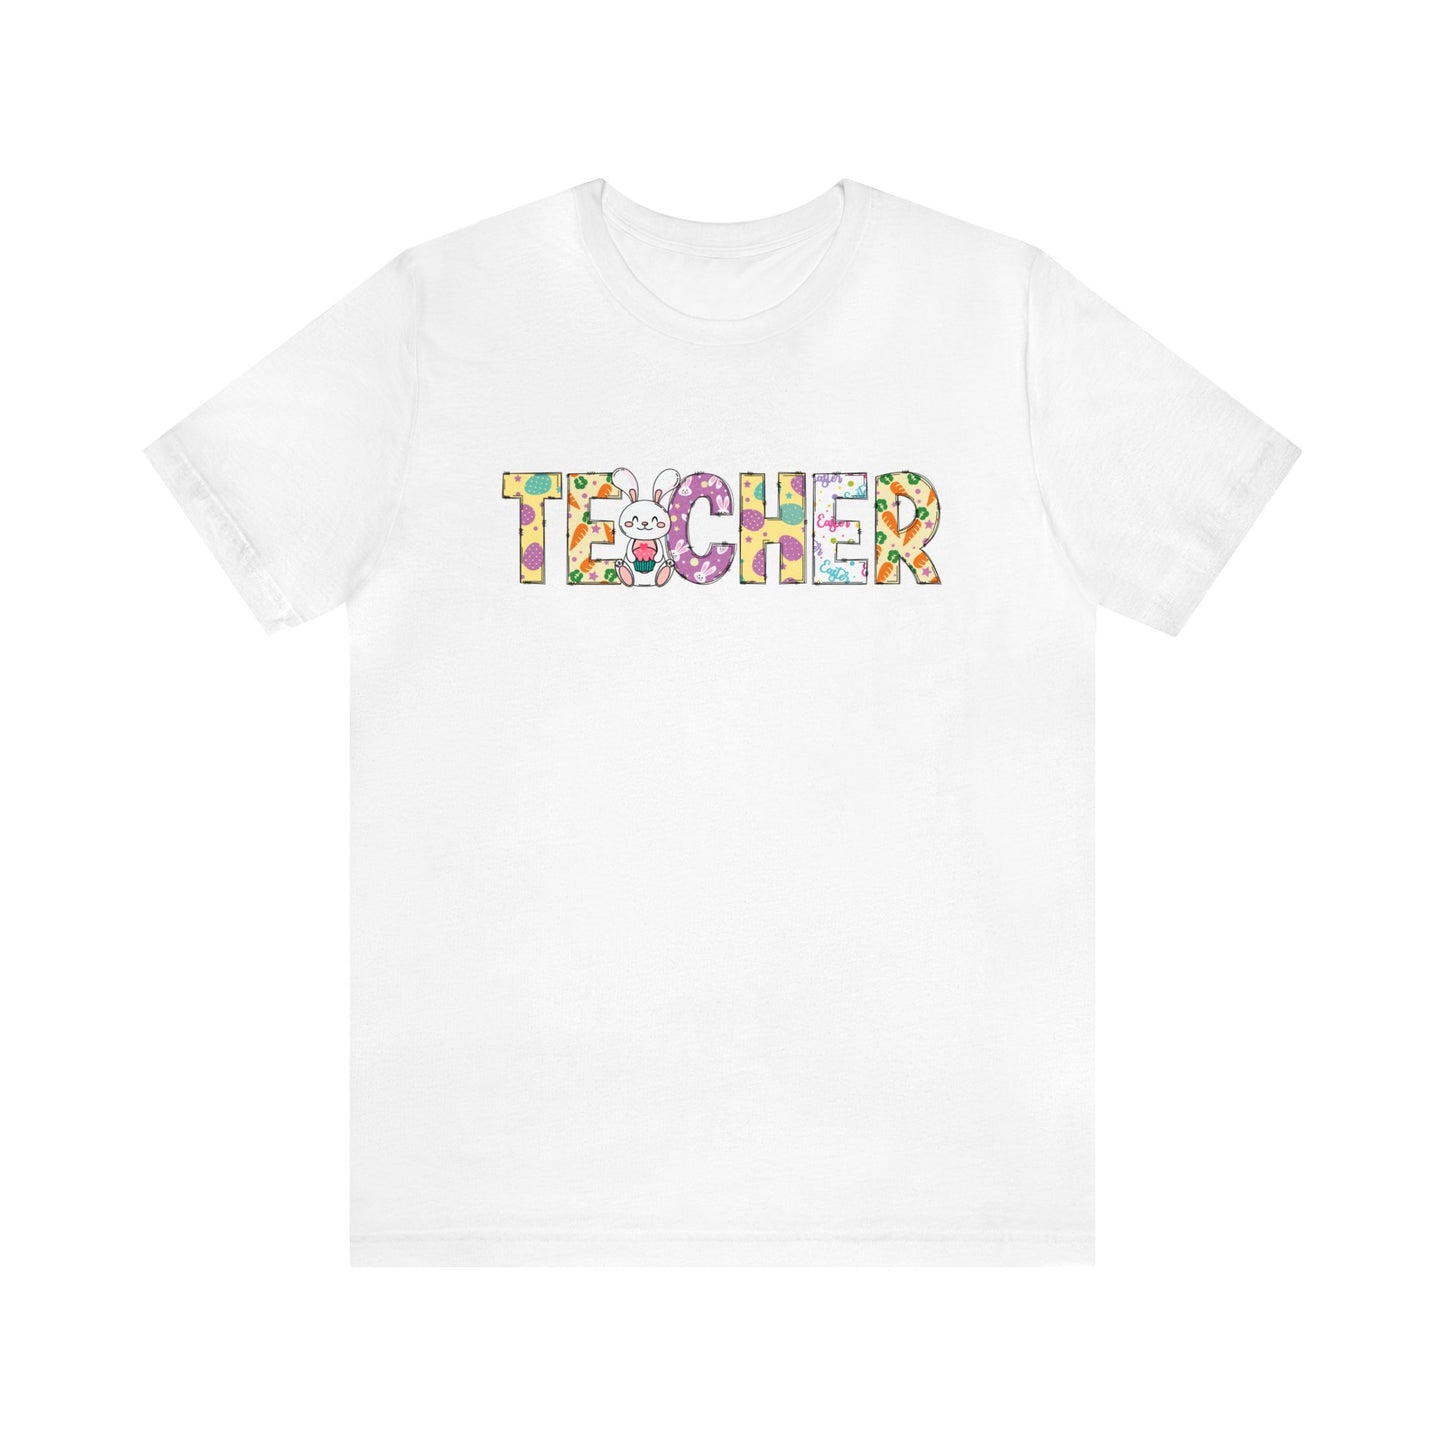 Happy Easter Teacher Shirt, Easter Shirt, Bunny Shirt, Happy Easter Shirt, Easter Bunny Shirt, Teacher Shirt